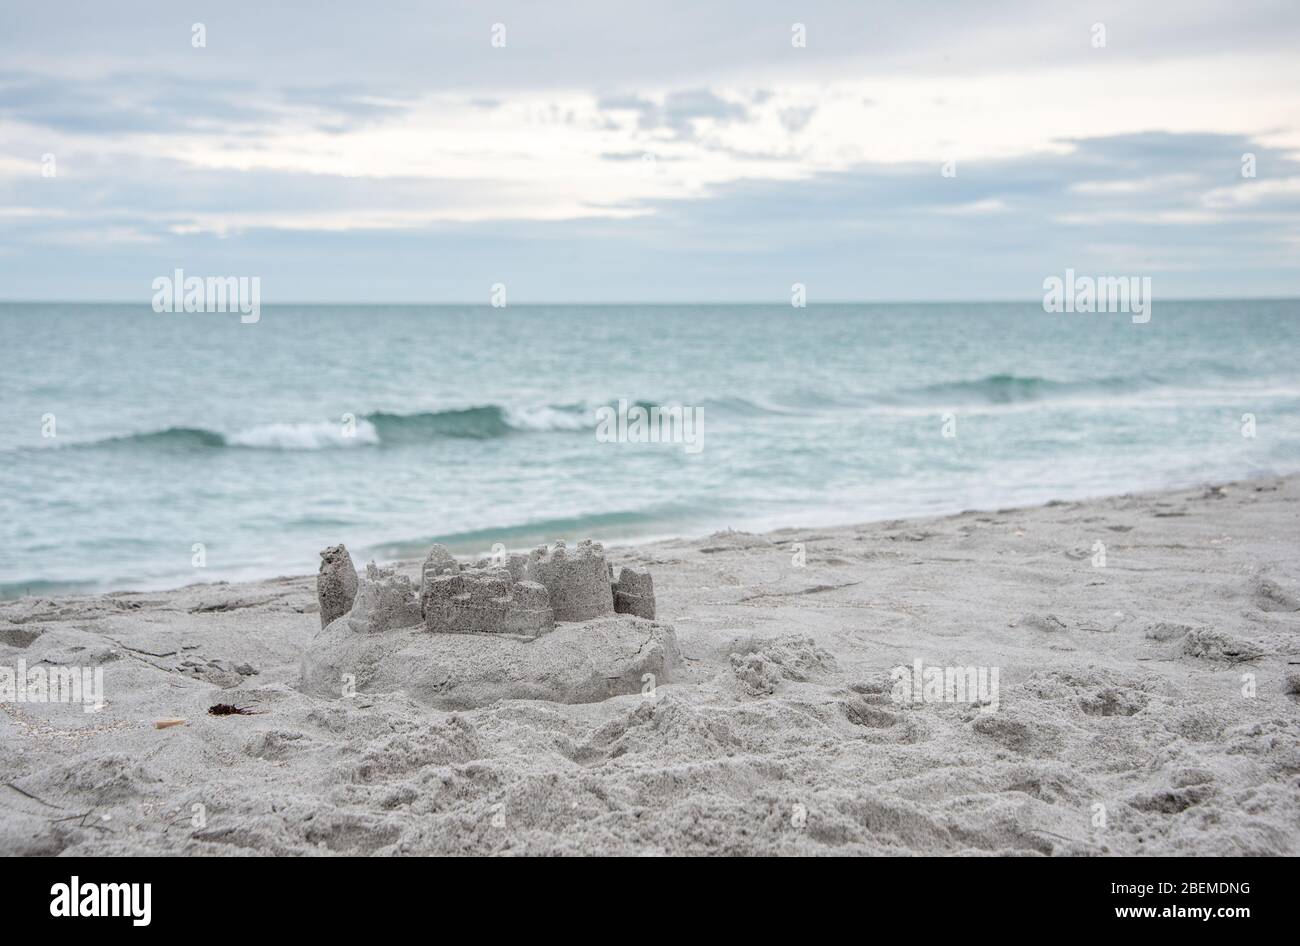 Un castello di sabbia sulla spiaggia con onde dolci, una scena serena per una vacanza in famiglia Florida / vacanza nella natura. Foto Stock